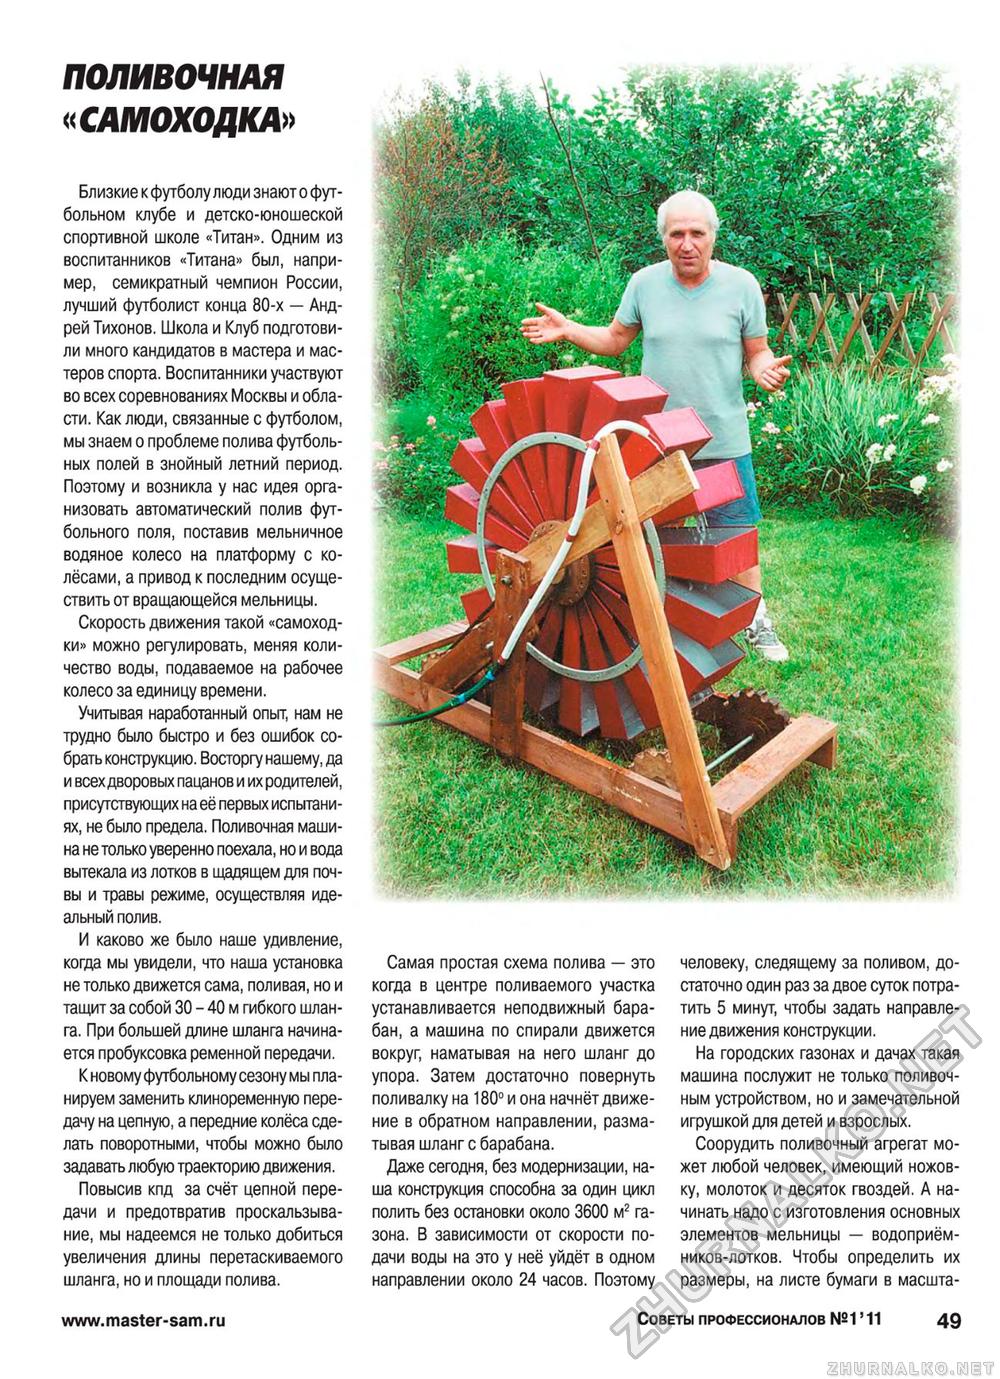 Советы профессионалов 2011-01, страница 49